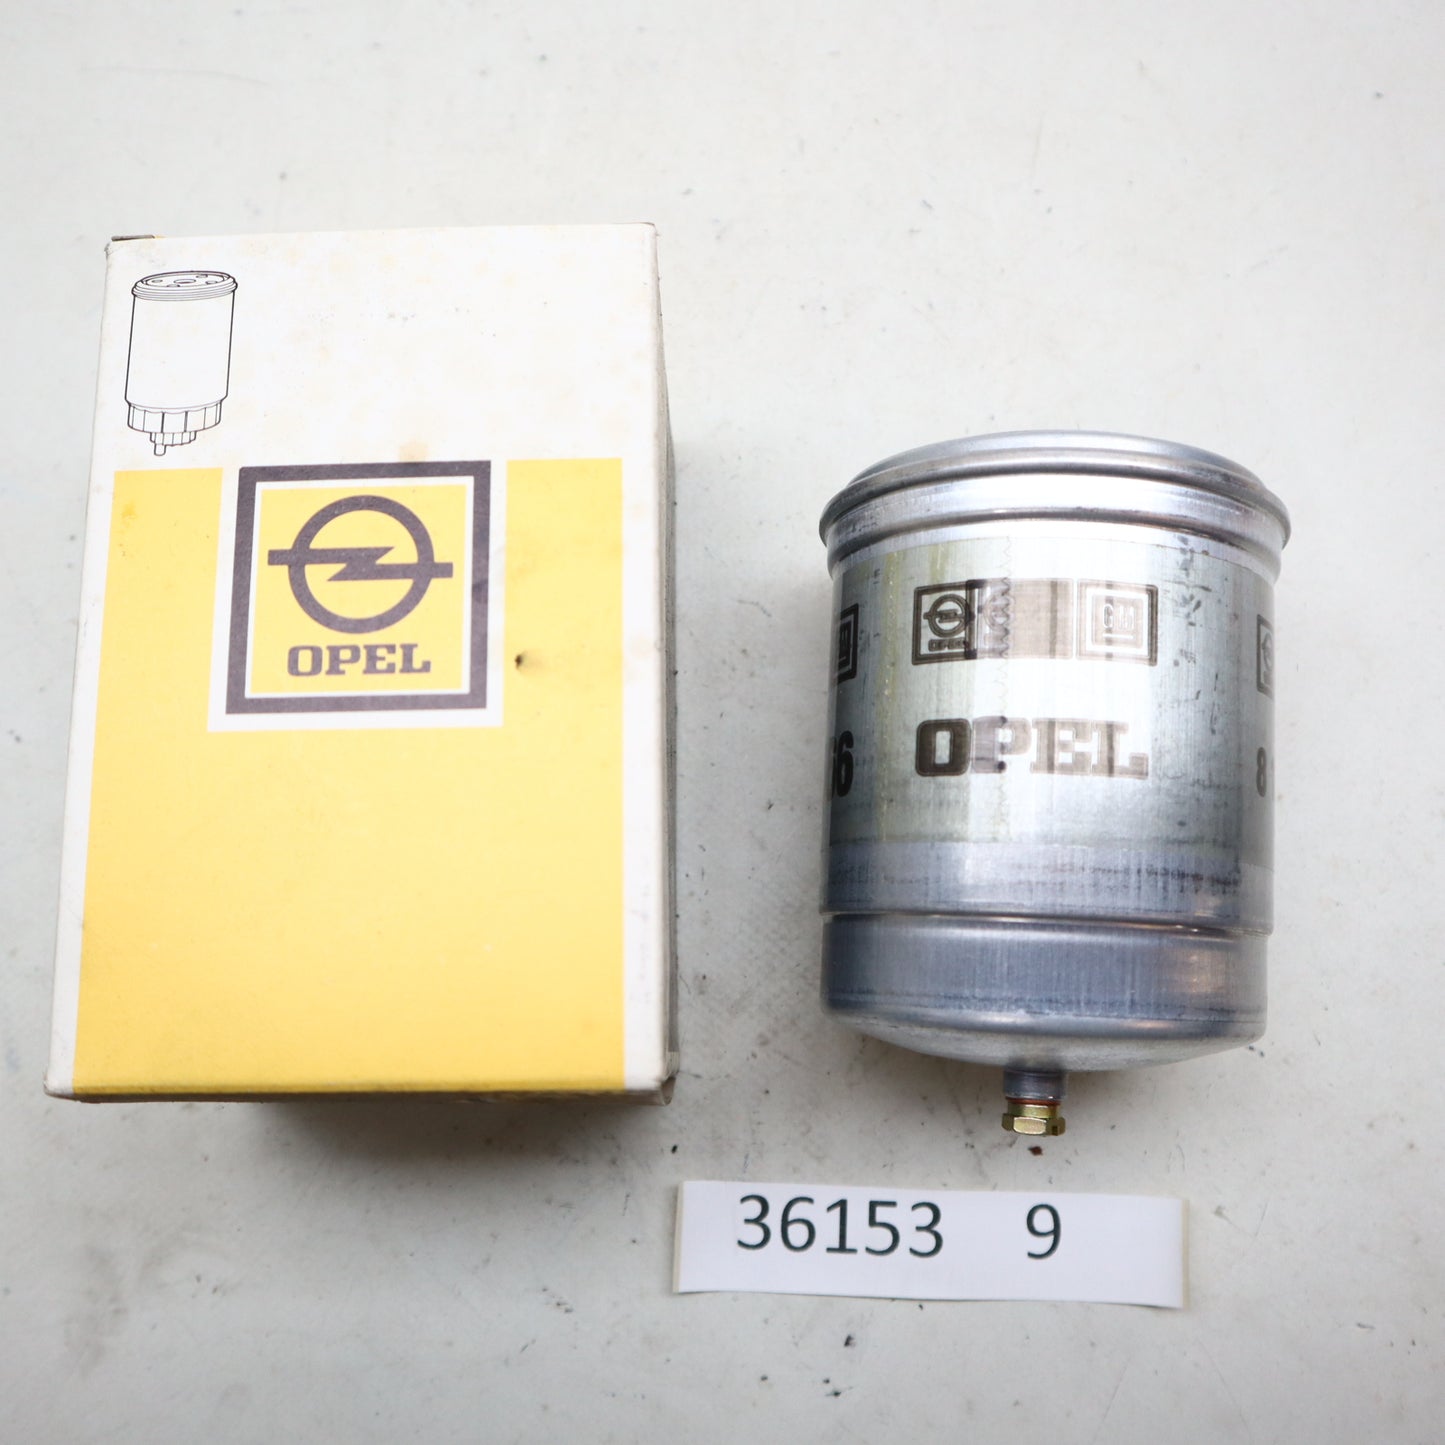 NEU Original Opel Kadett C Ölfilter NOS